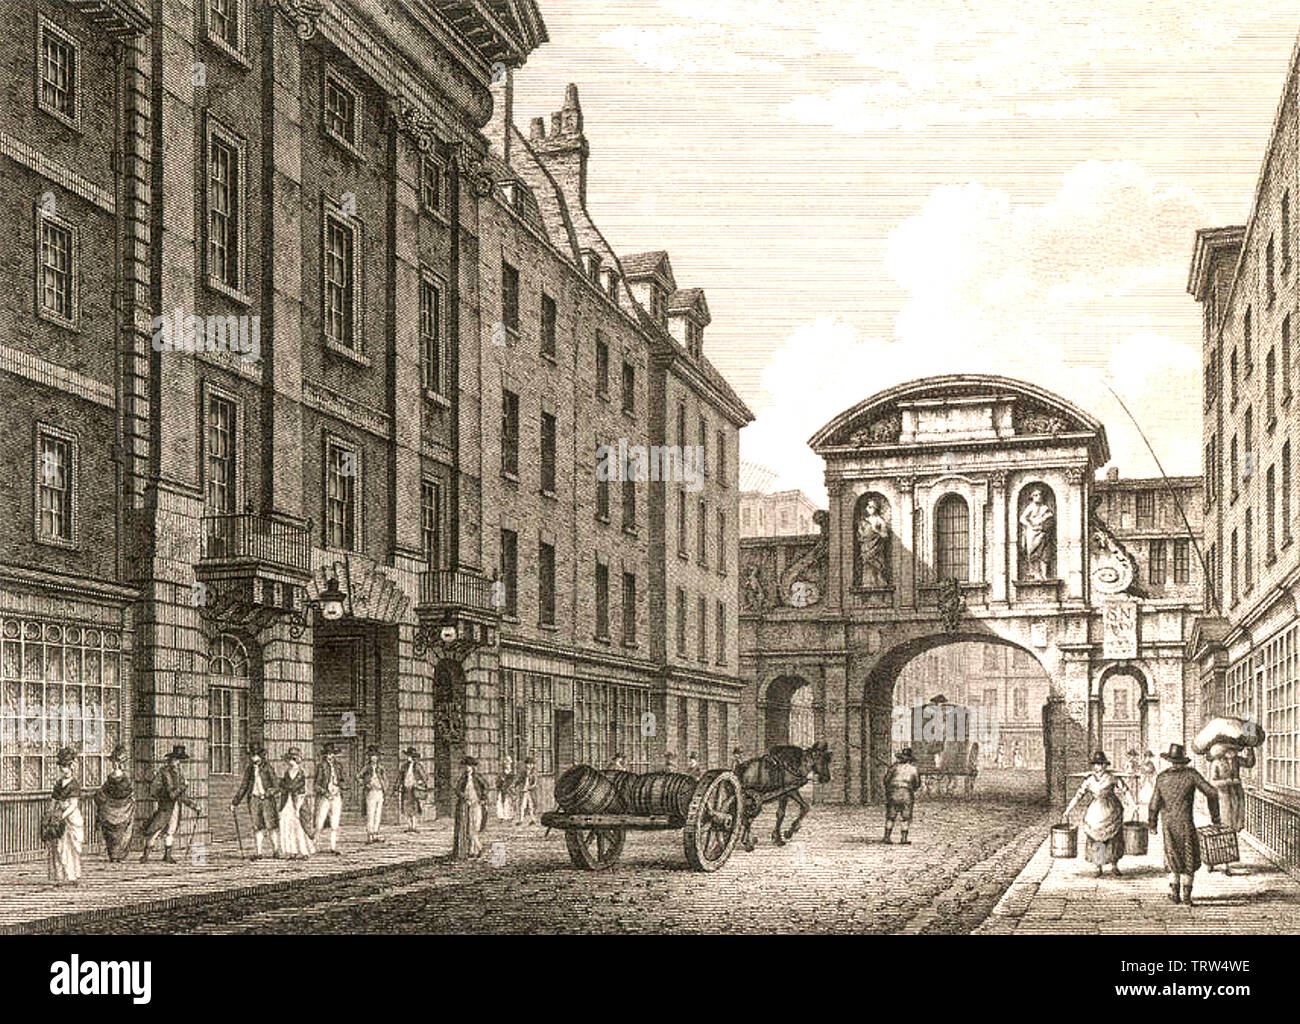 TEMPLE BAR en London's Strand en 1800 Foto de stock